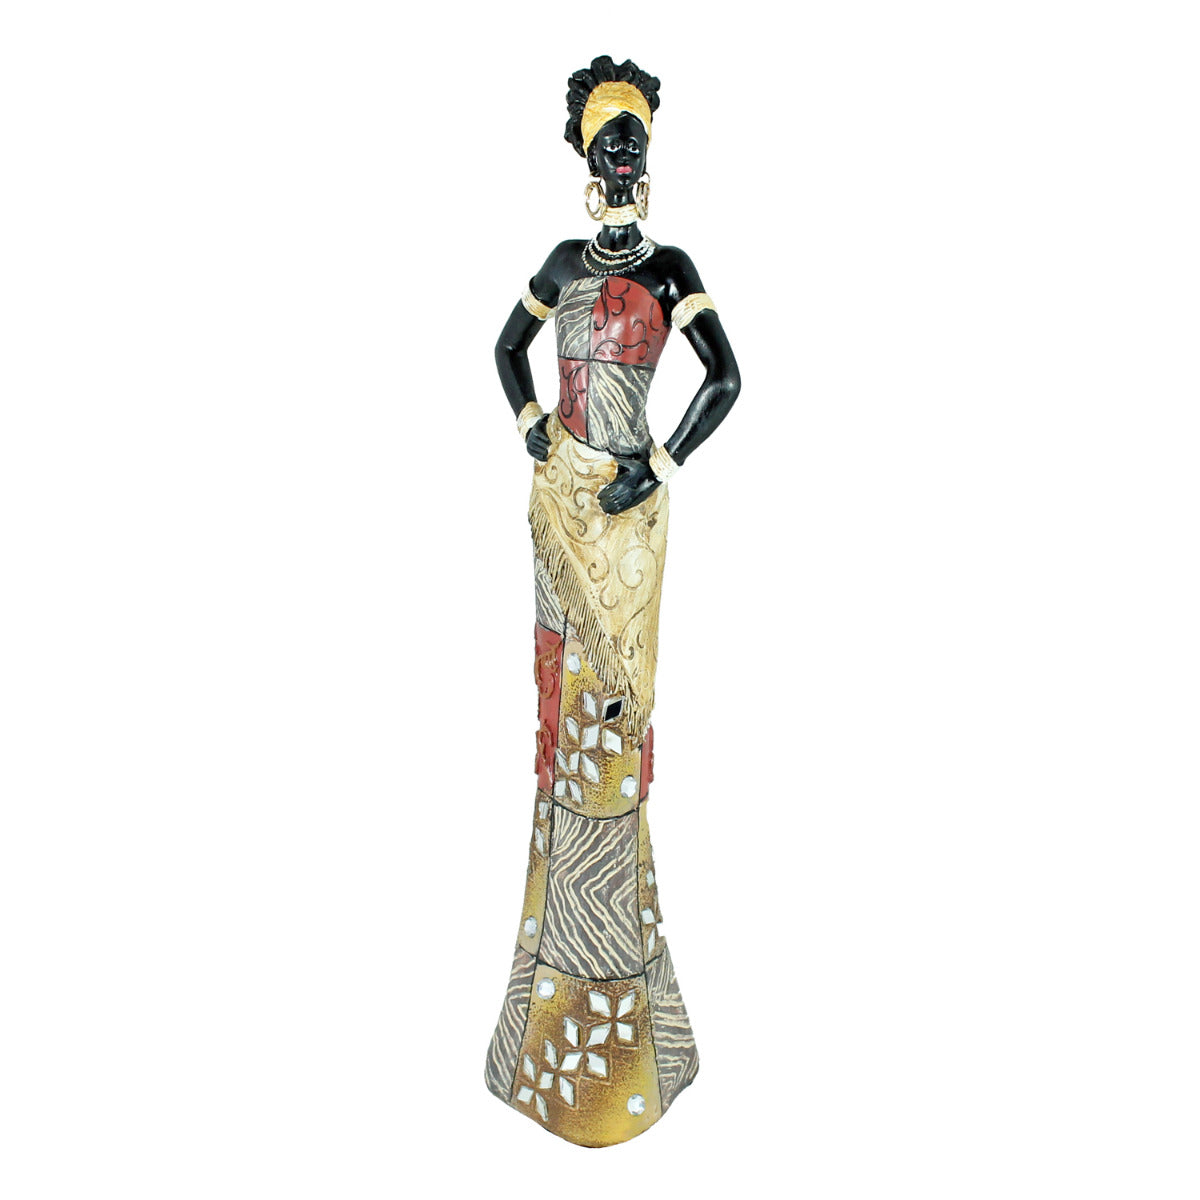 Afrika Deko Figur Frau in einem bunten Kleid Afrikanische Dekofiguren